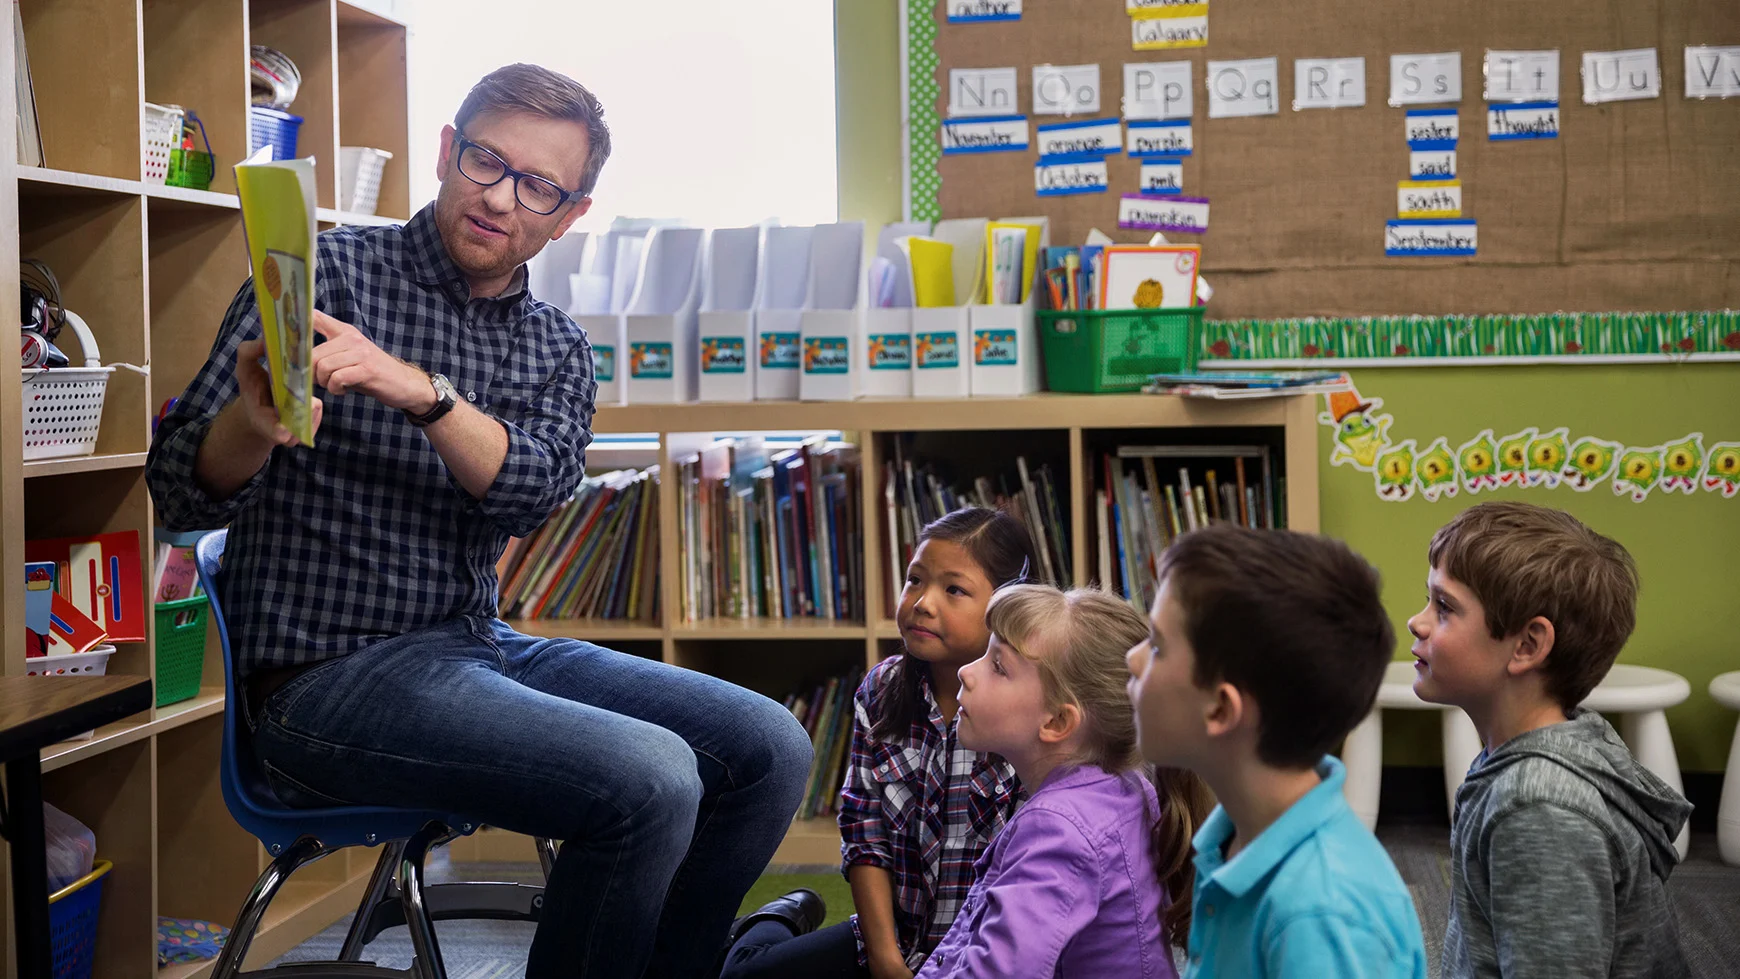 Un maestro está sentado en una silla y sostiene un libro, en el que señala una palabra. Los cuatro niños que están sentados en el piso del salón de clases observan.